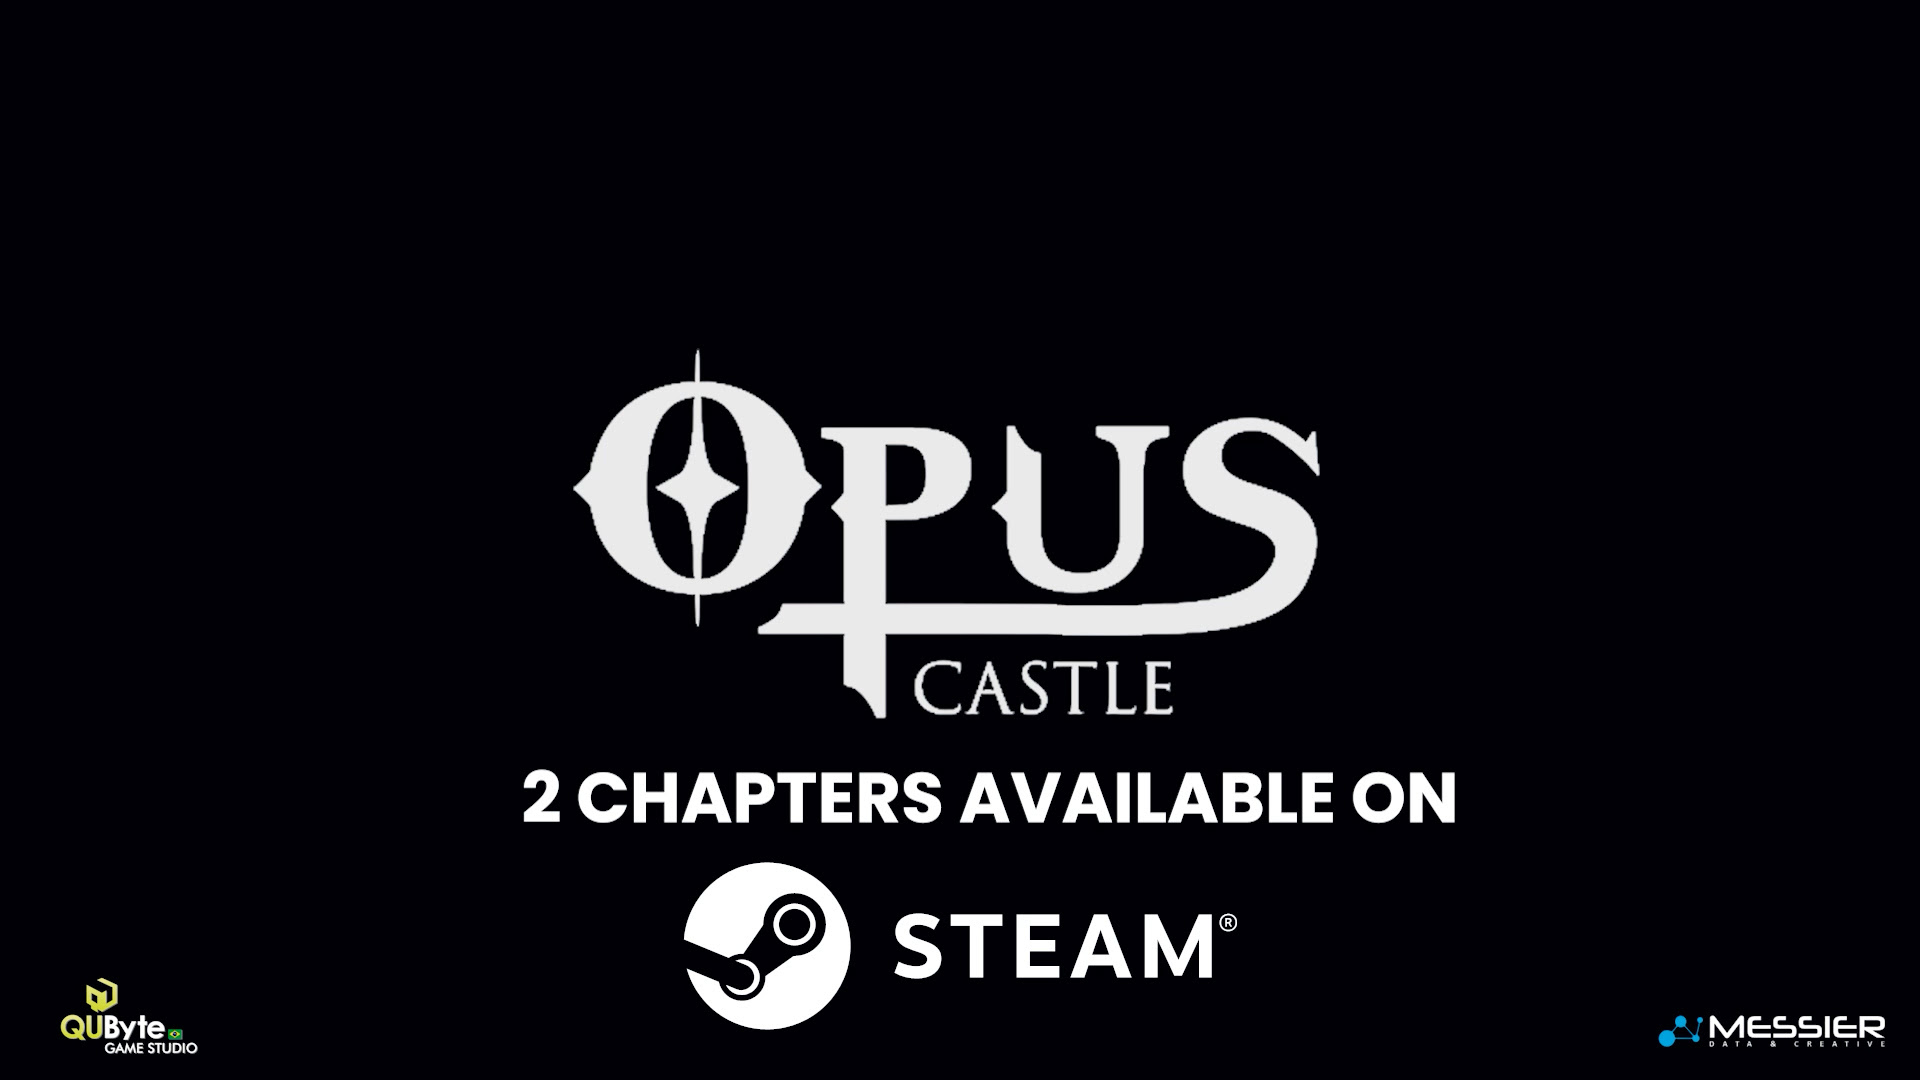 Suicídio ou assassinato? Você deve resolver este mistério ou escapar no novo Opus Castle